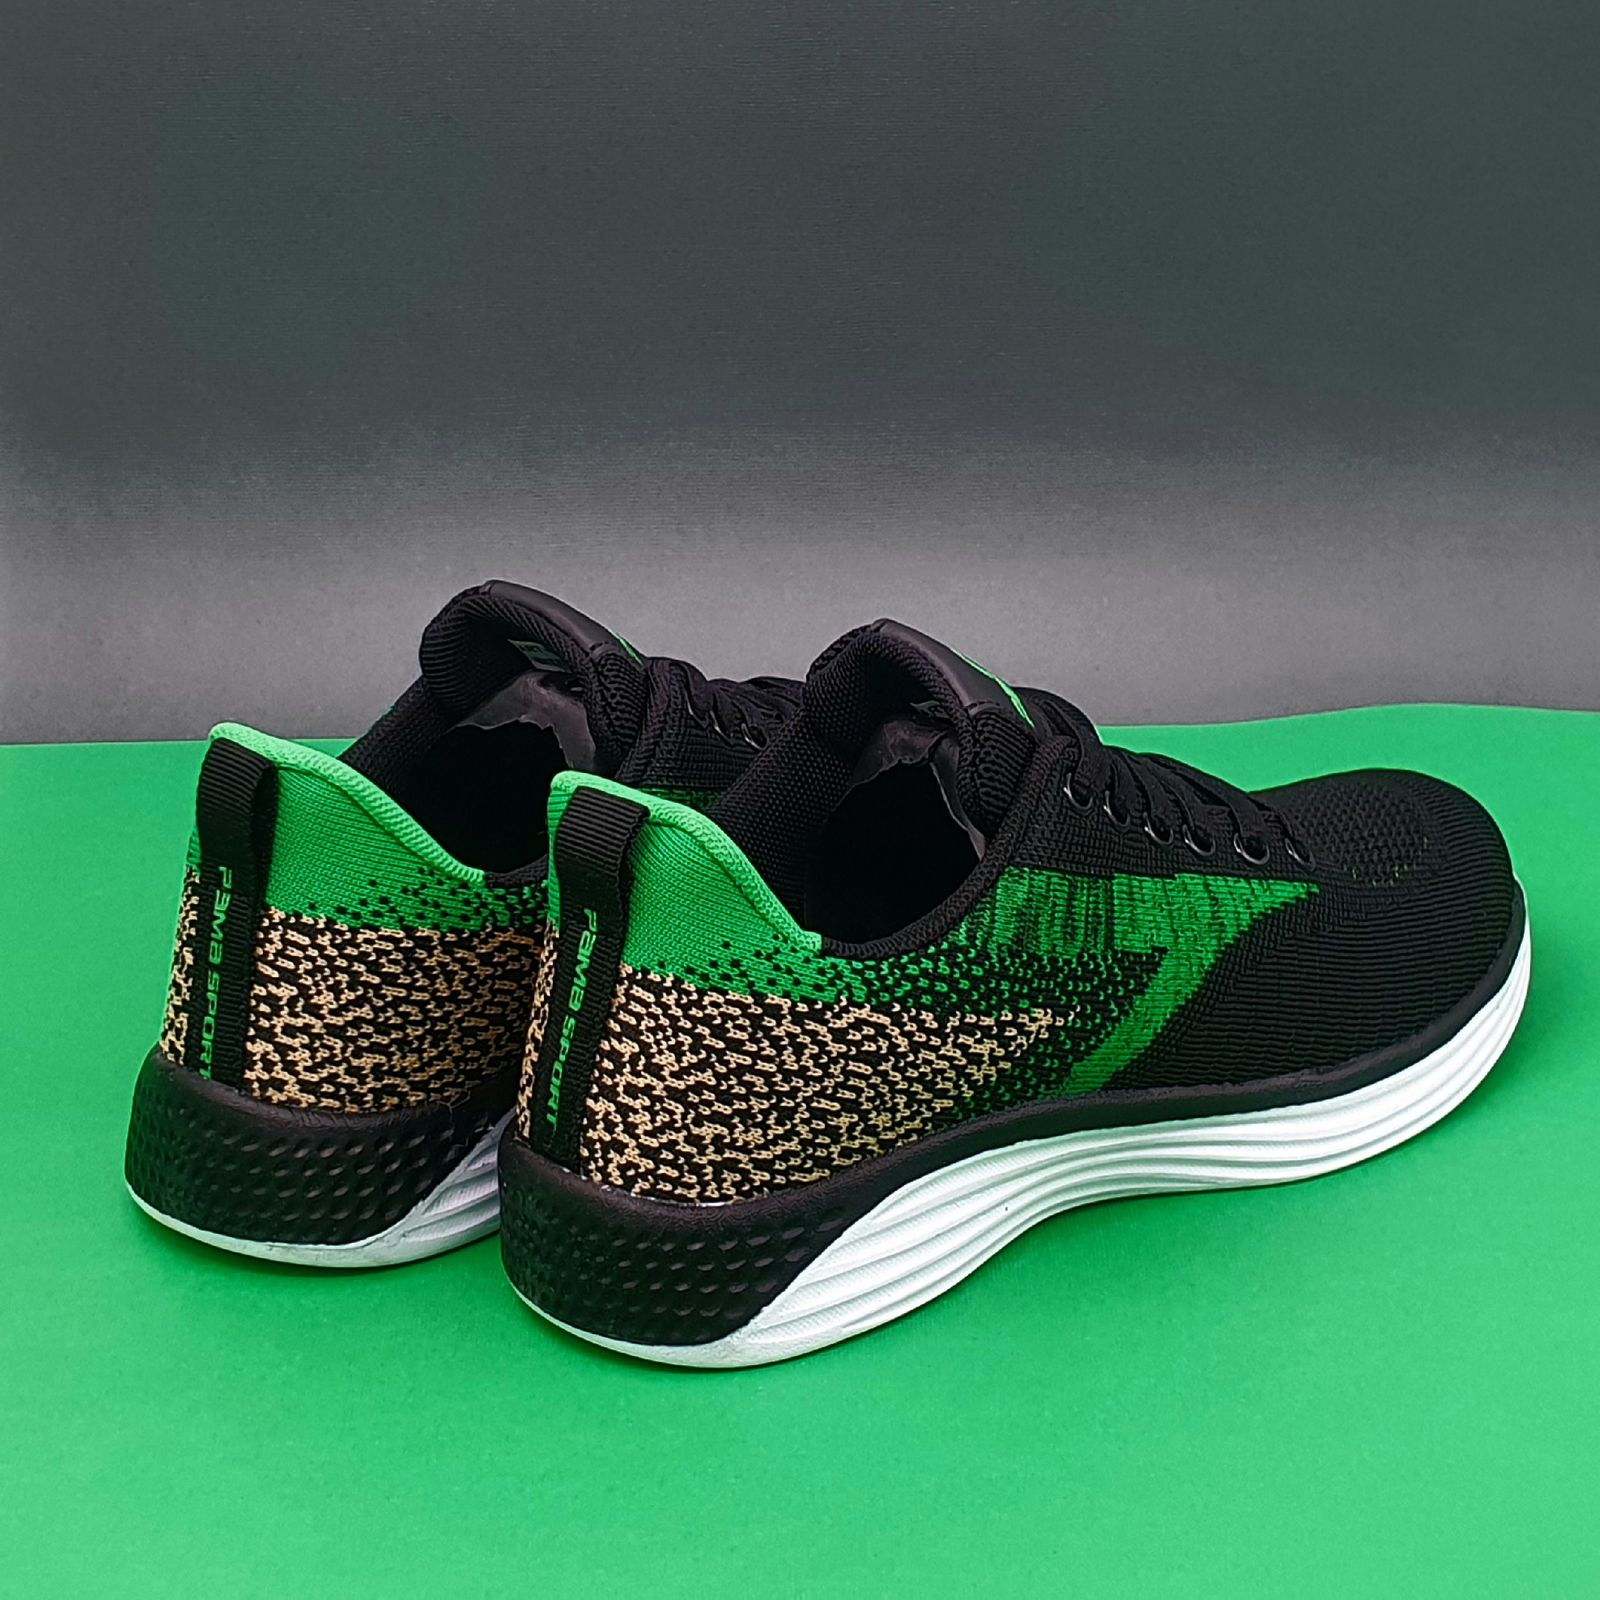 کفش مخصوص دویدن مردانه پاما مدل VR-828 کد 2-G1615 -  - 4